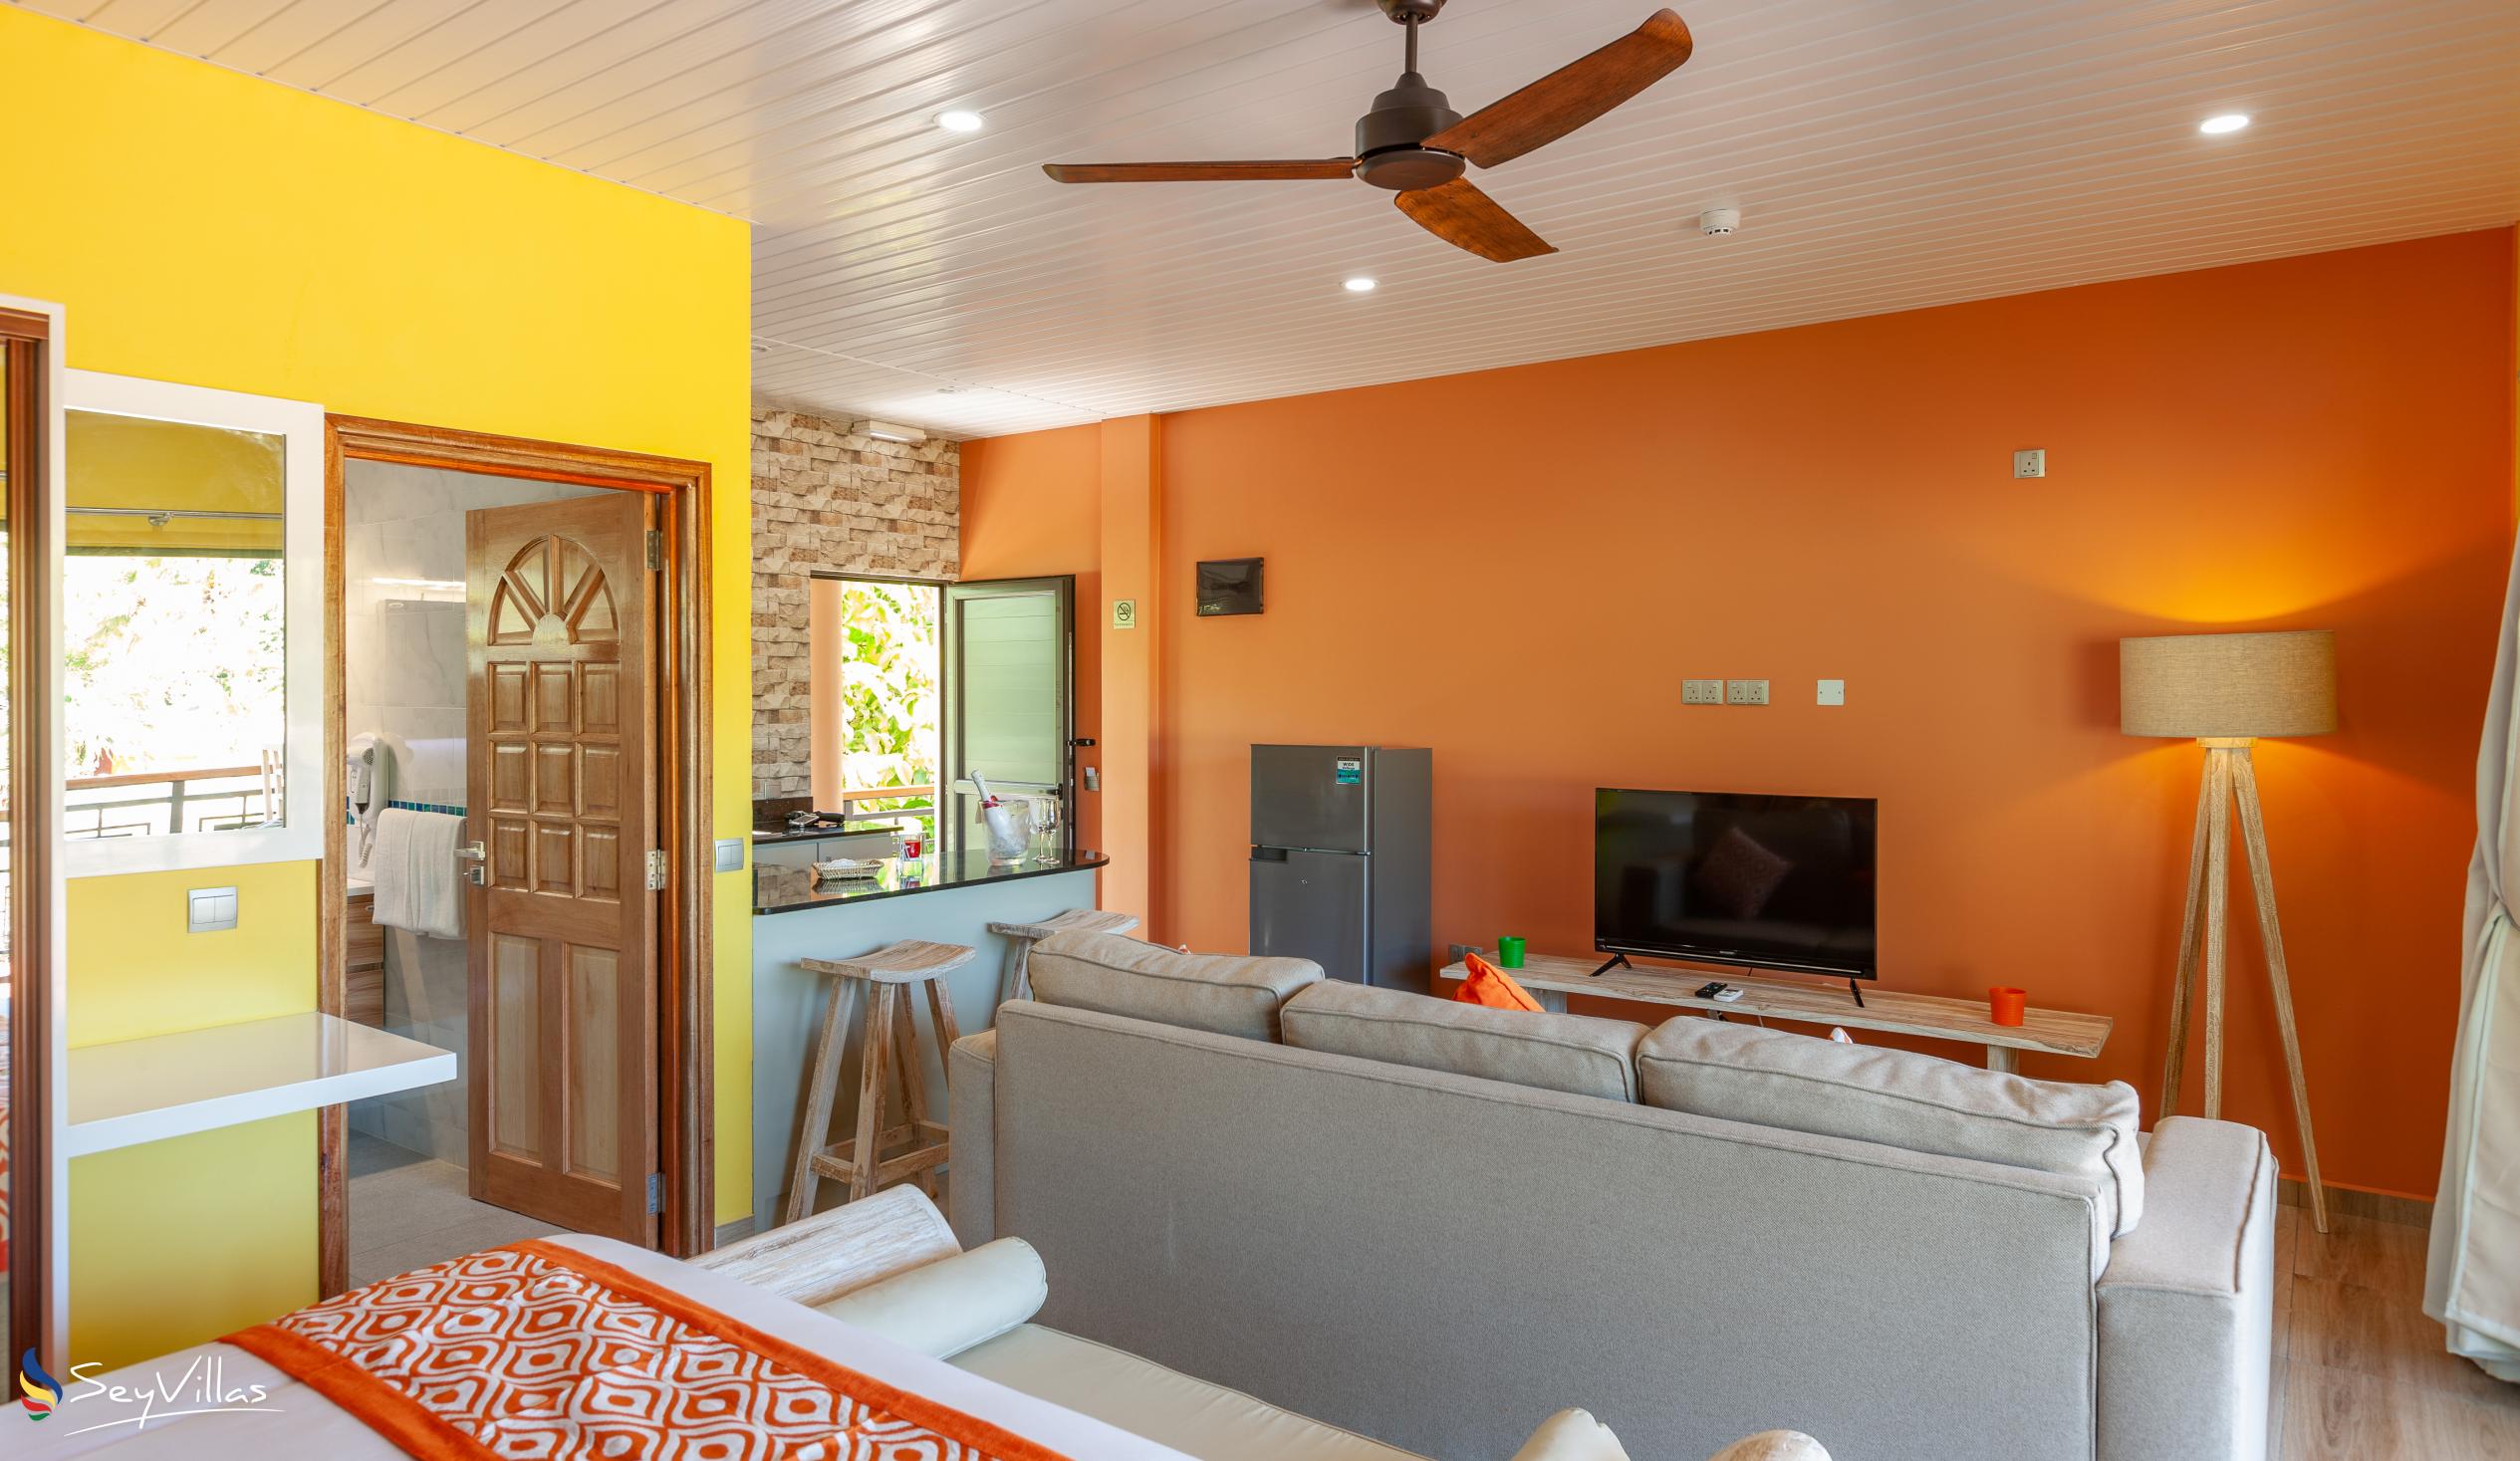 Photo 122: Casa de Leela - Deluxe Apartment - La Digue (Seychelles)